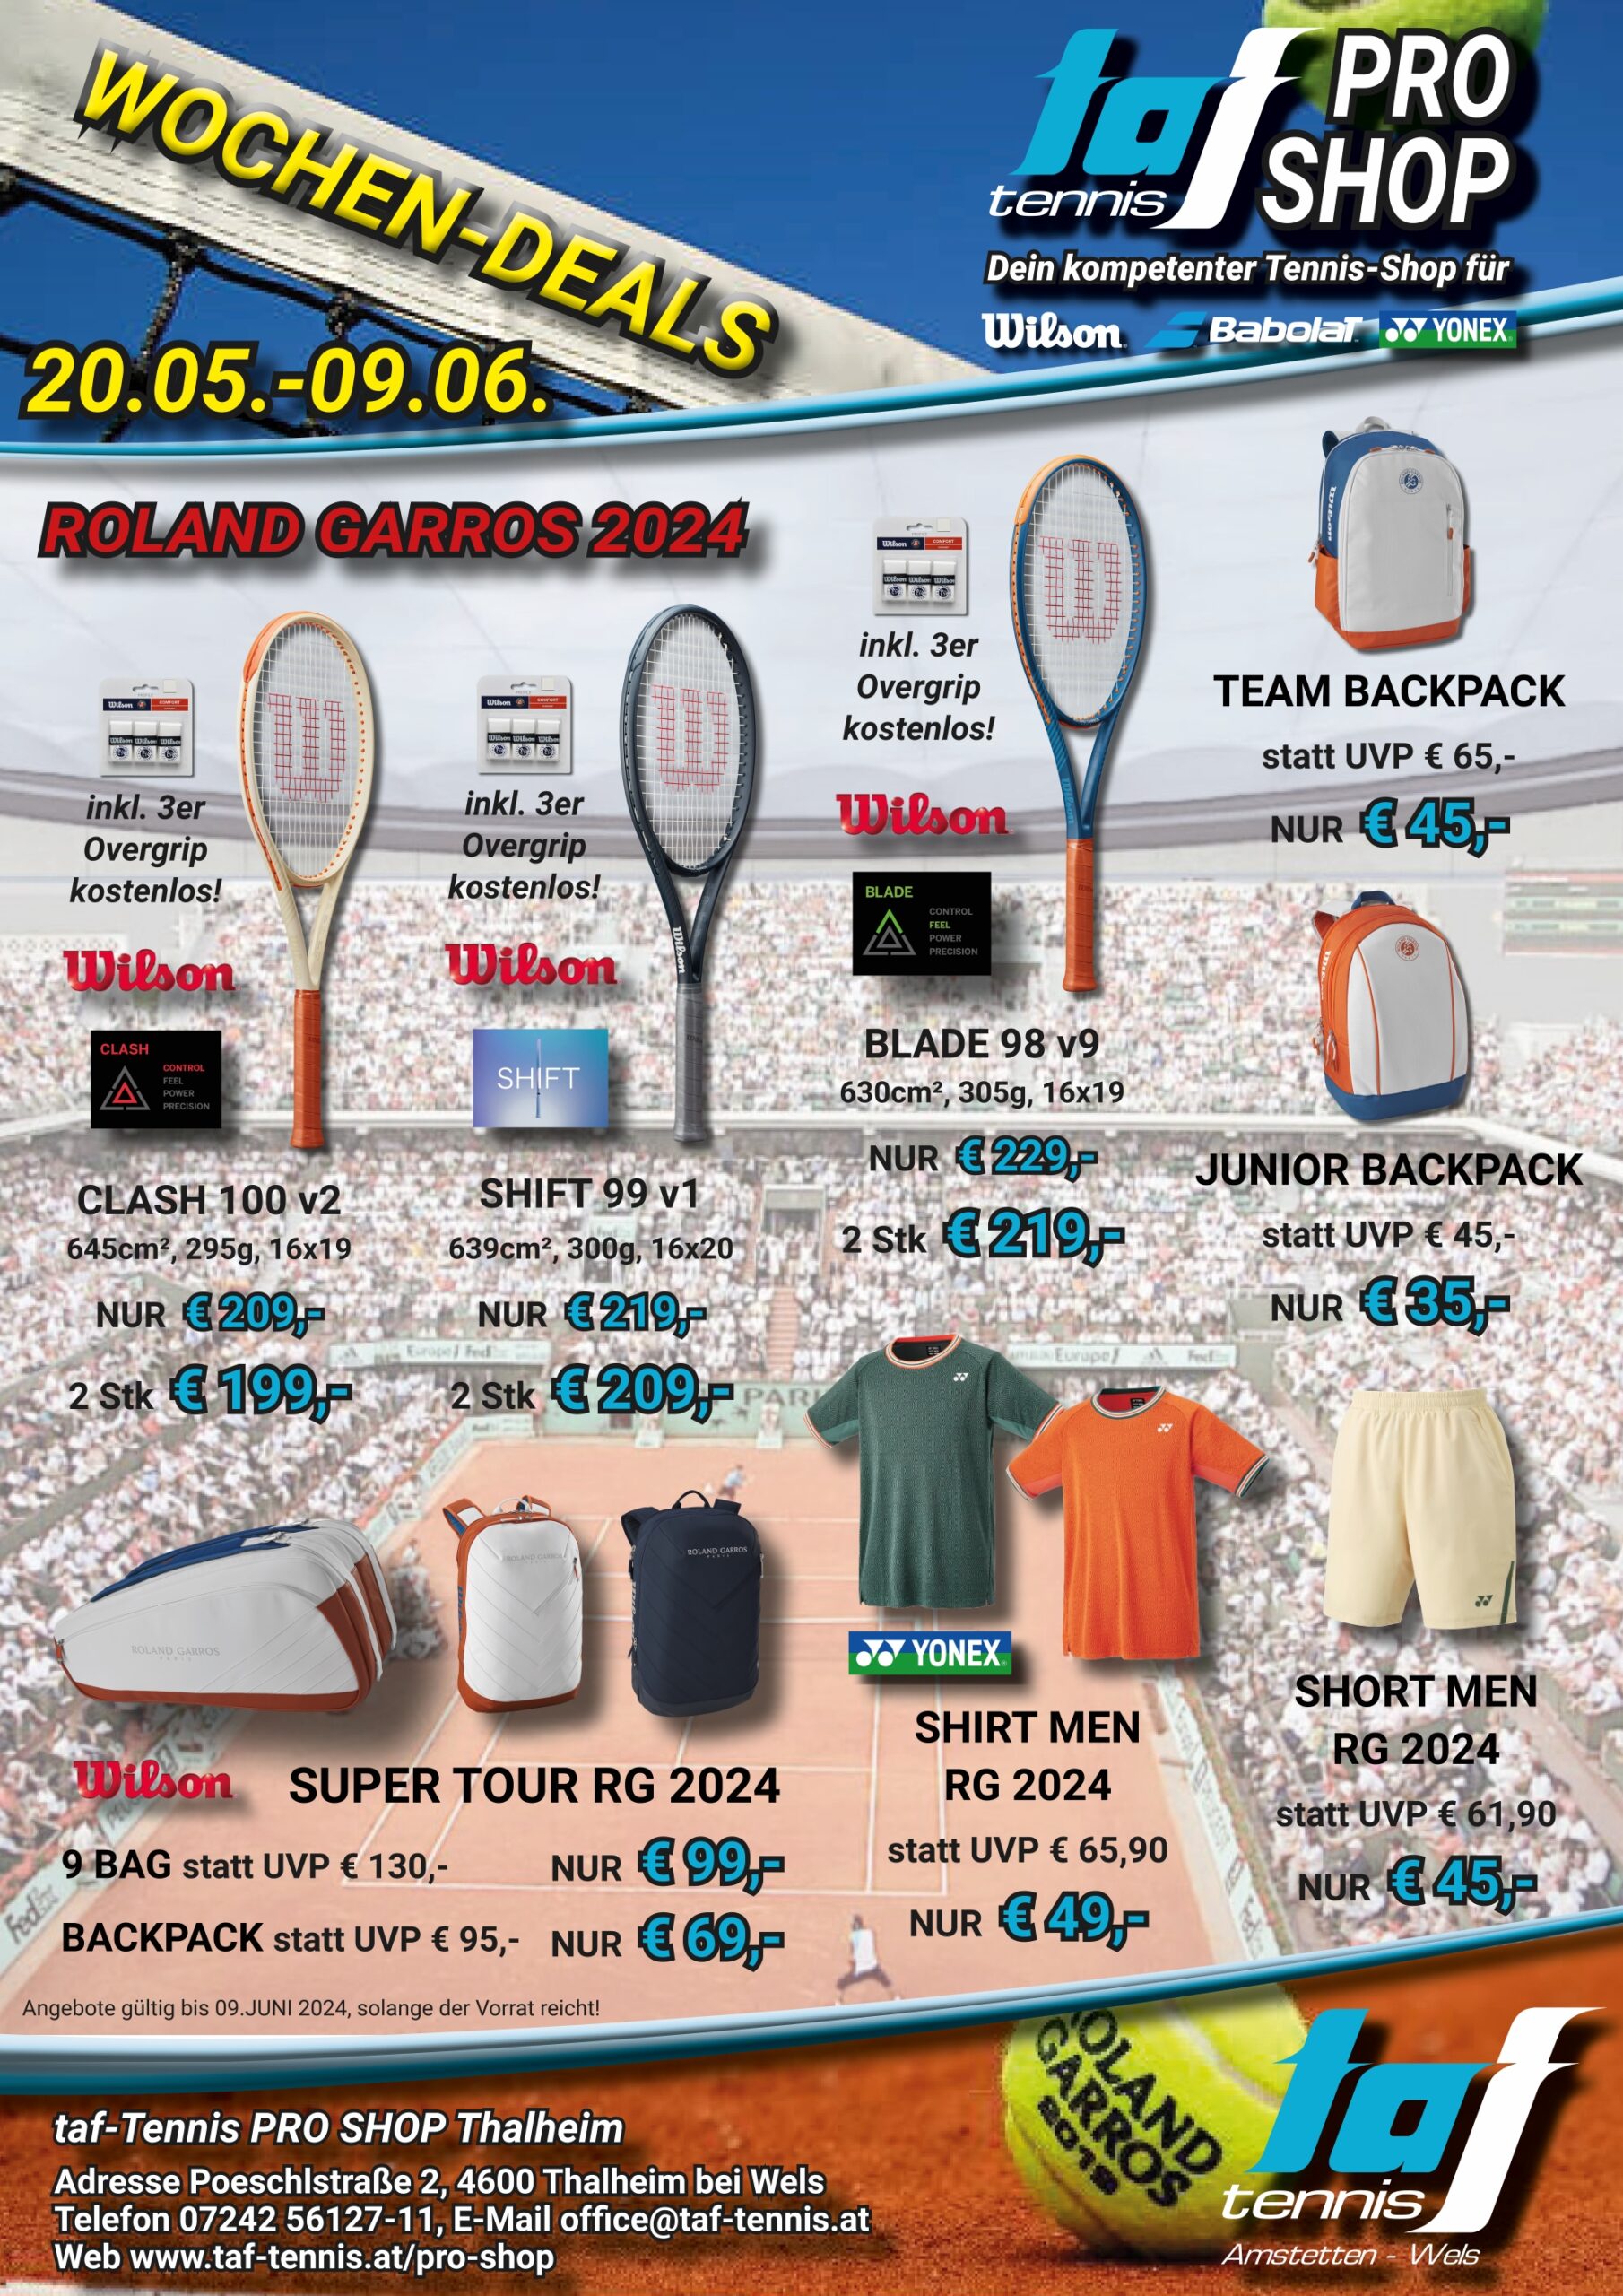 Wochenangebote mit Tennischläger & Taschen sowie dazugehöriger Beschreibung und Preisen